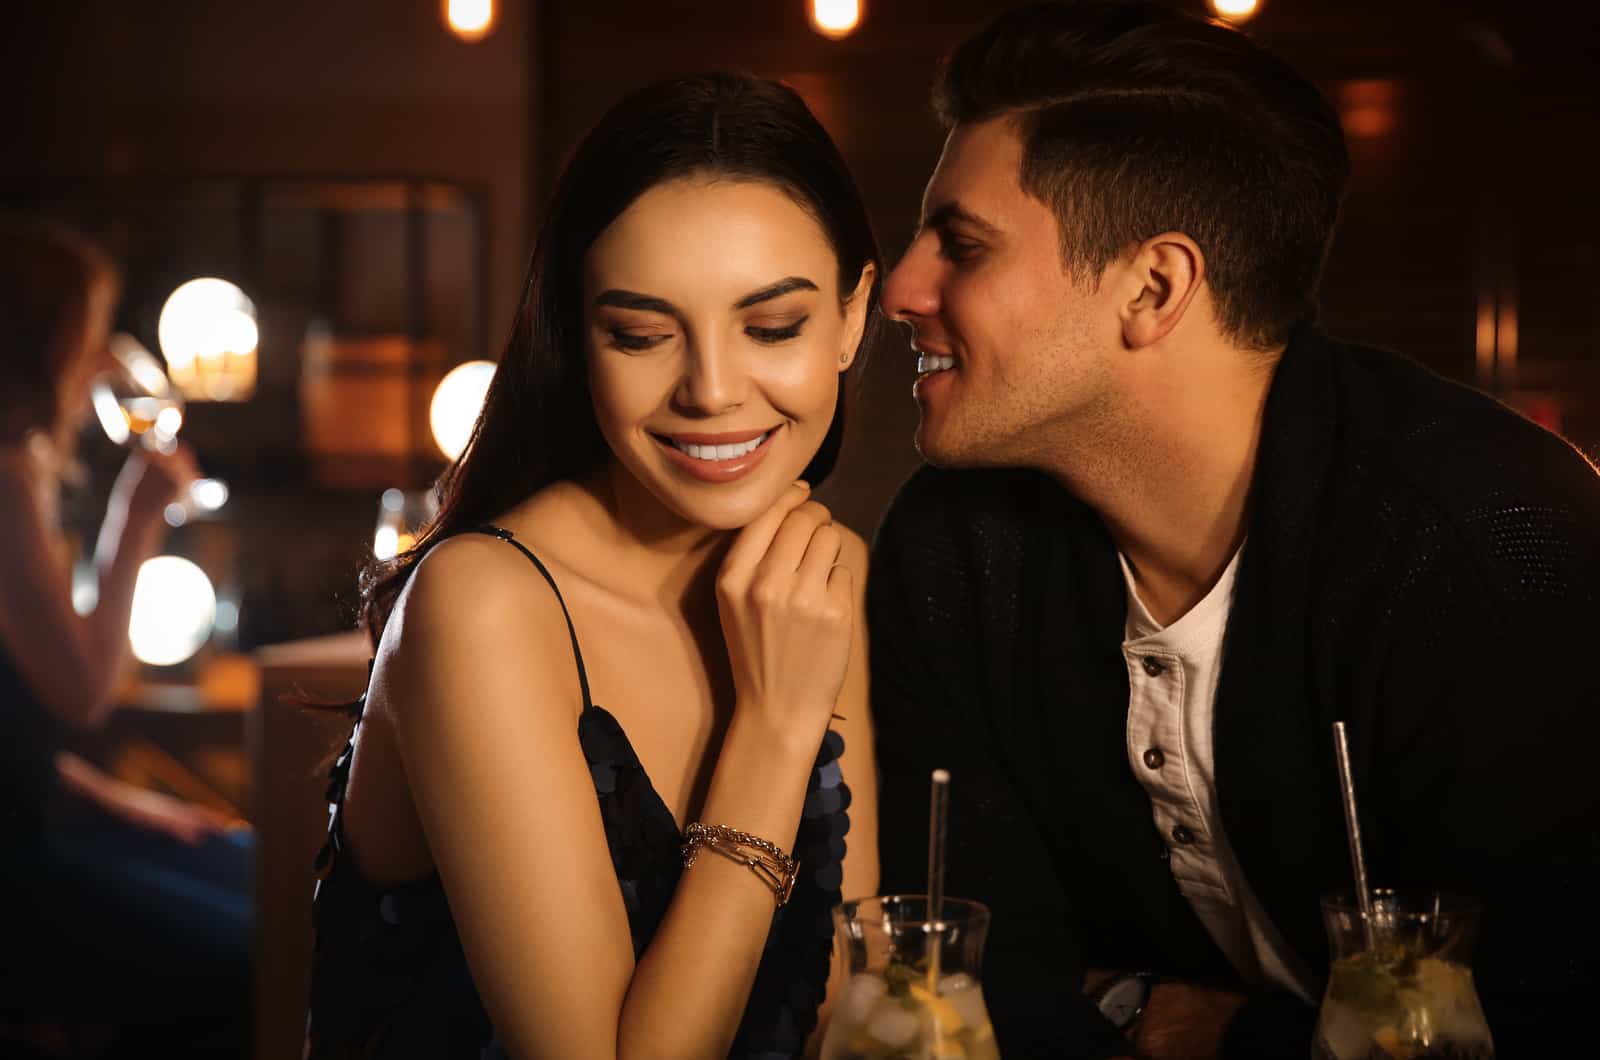 man and woman flirt at a bar